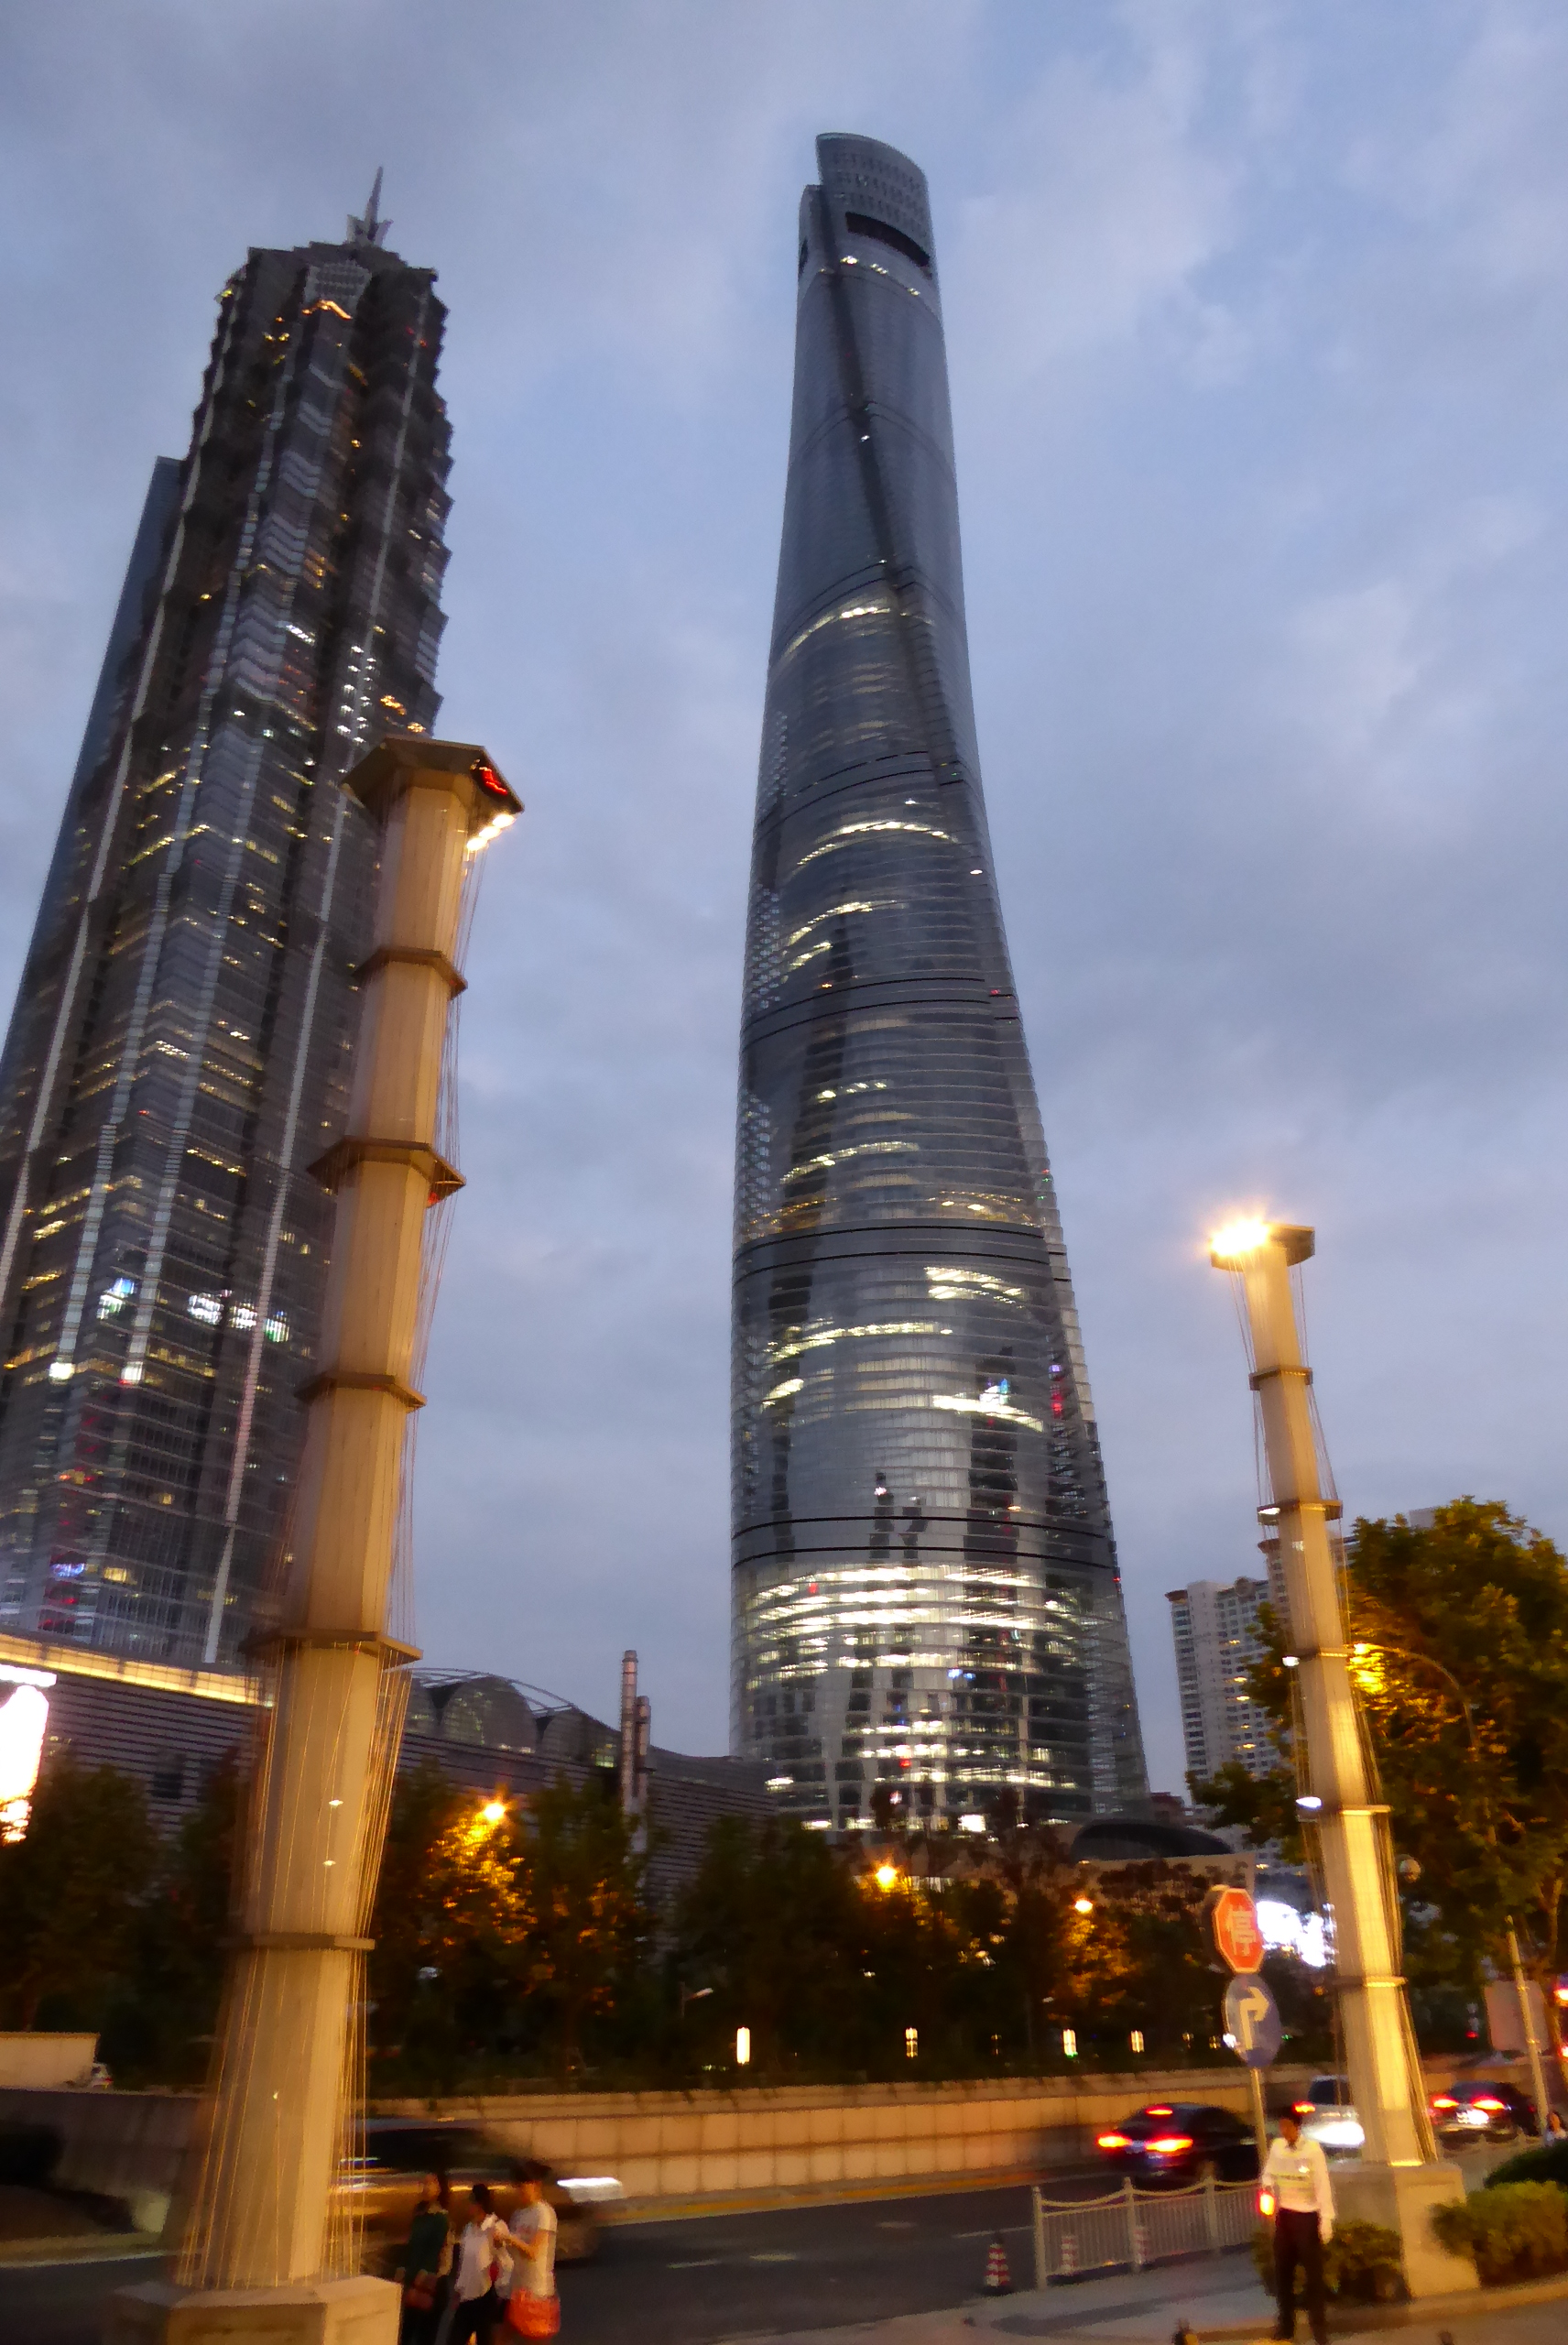 Zľava - Ťin Mao a Shanghai Tower